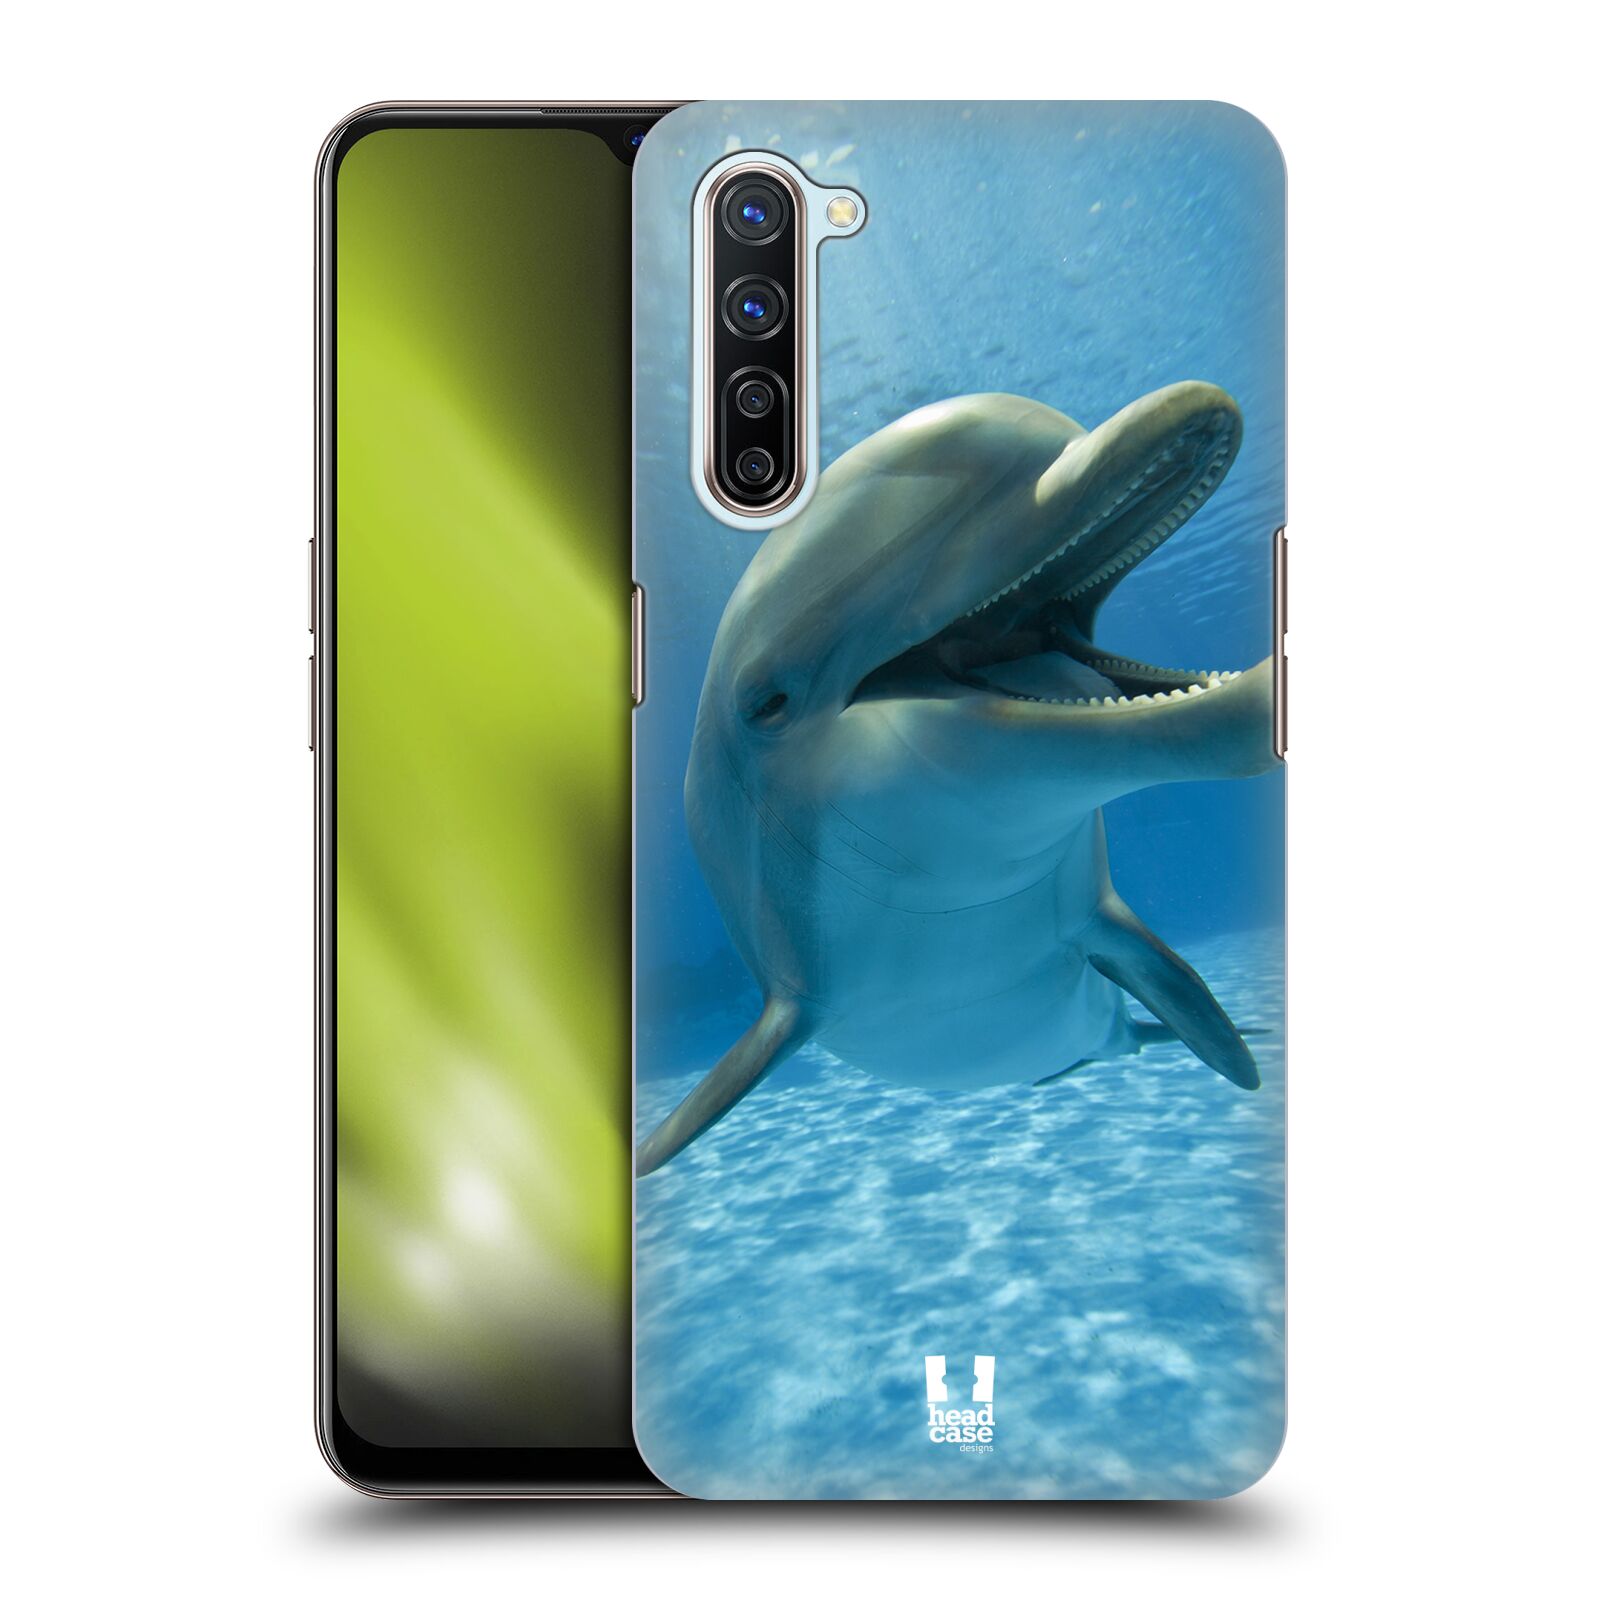 Zadní obal pro mobil Oppo Find X2 LITE - HEAD CASE - Svět zvířat delfín v moři